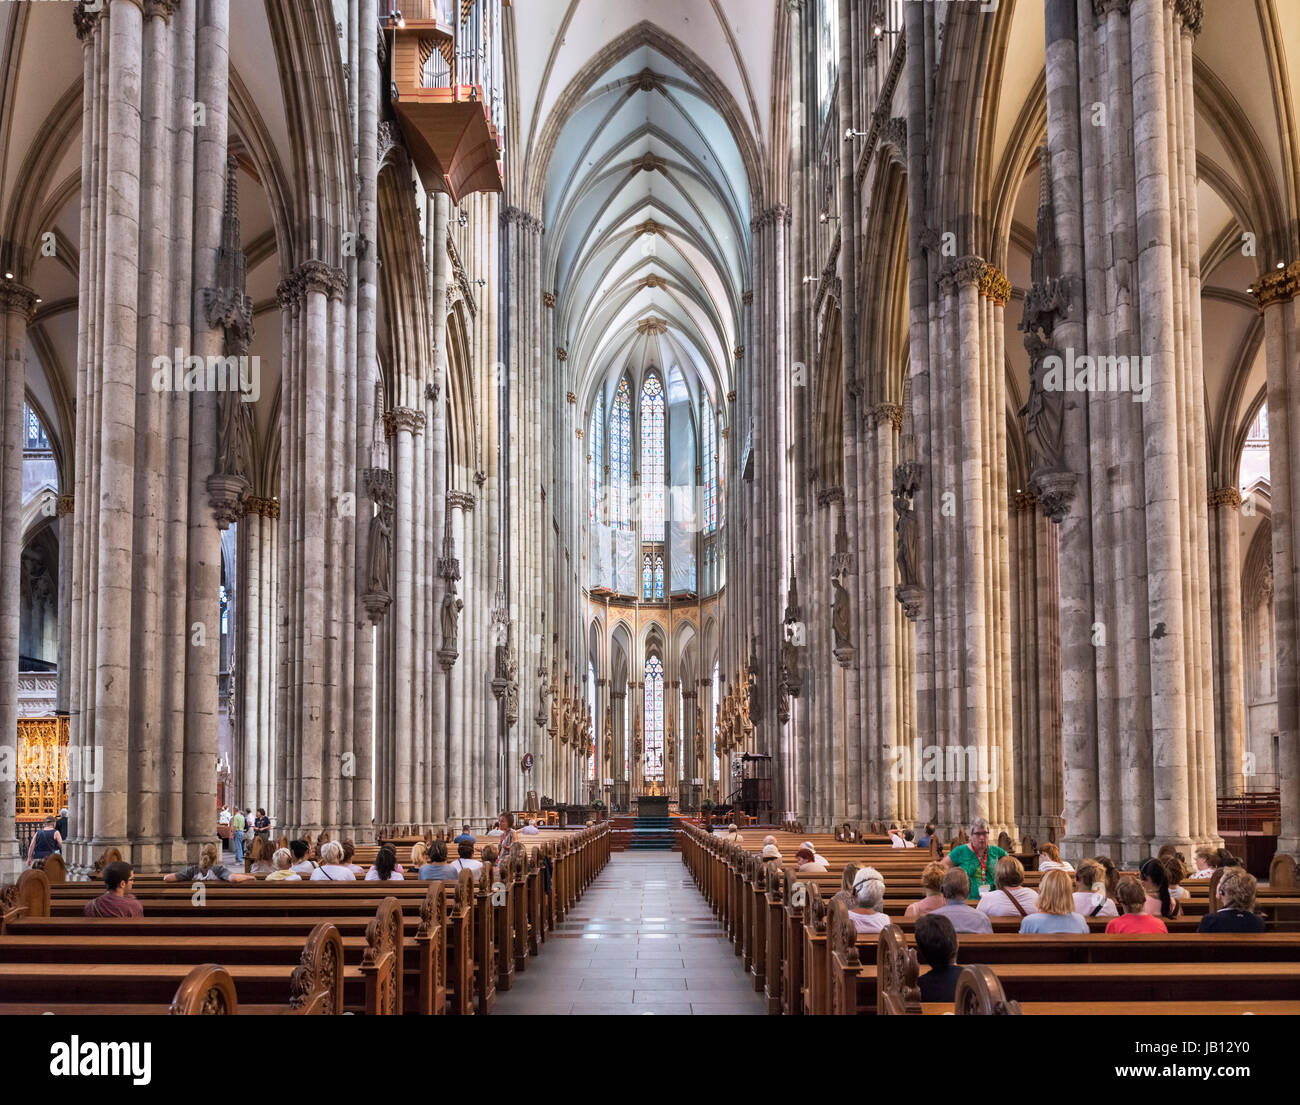 La cattedrale di Colonia interni. Navata centrale del Duomo di Colonia (Kölner Dom), Colonia, Germania Foto Stock